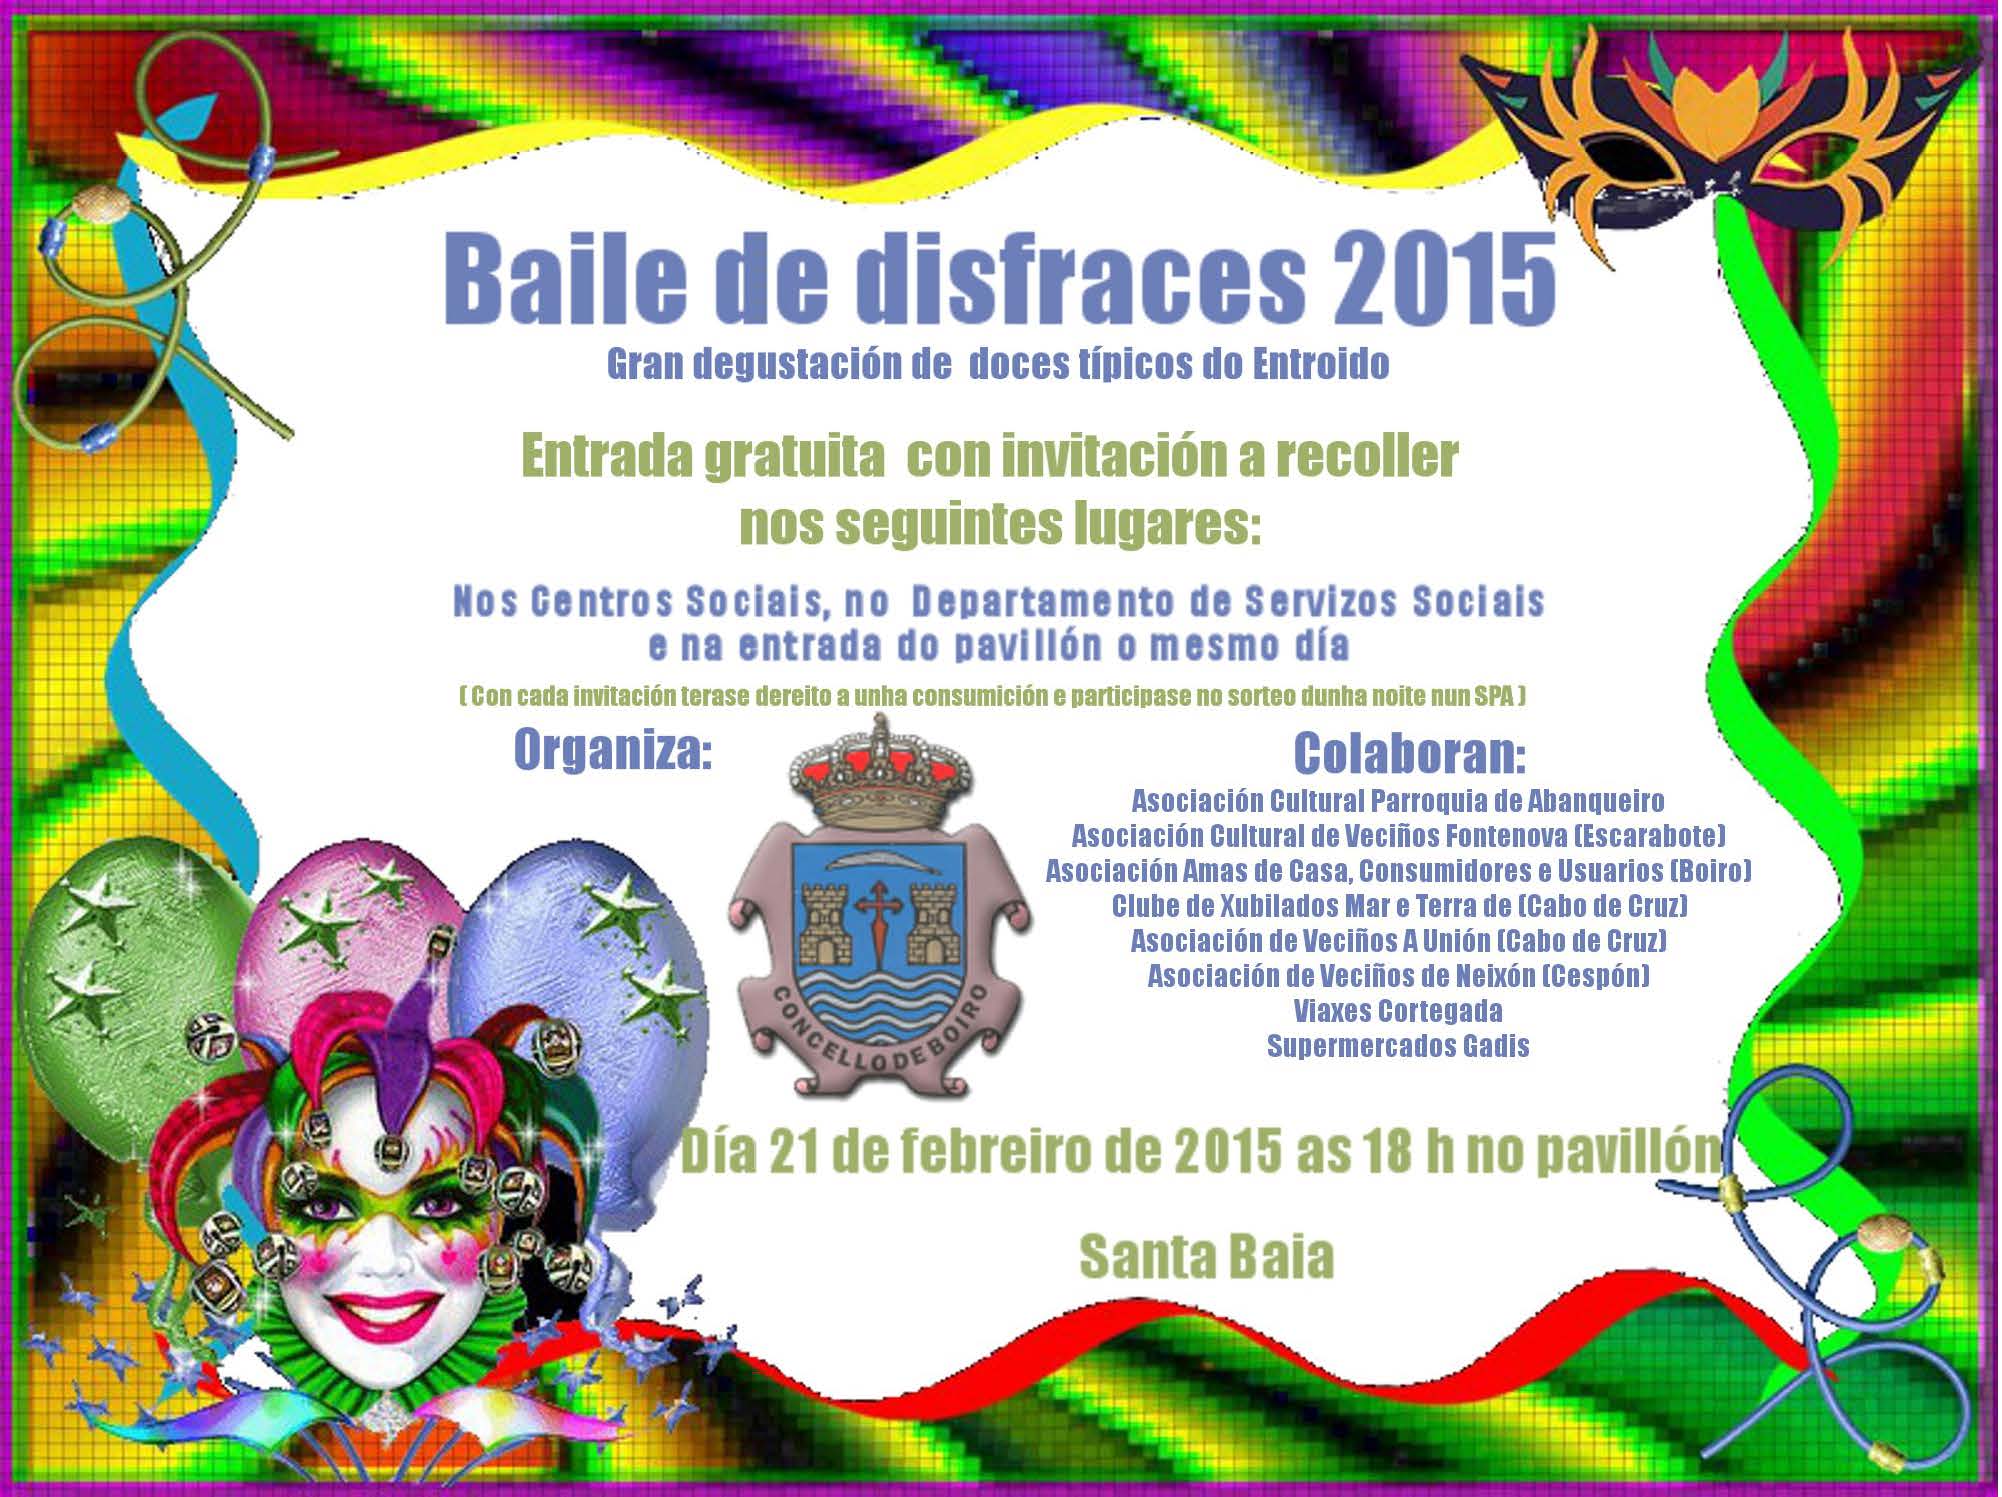 Bailedisfraces2015